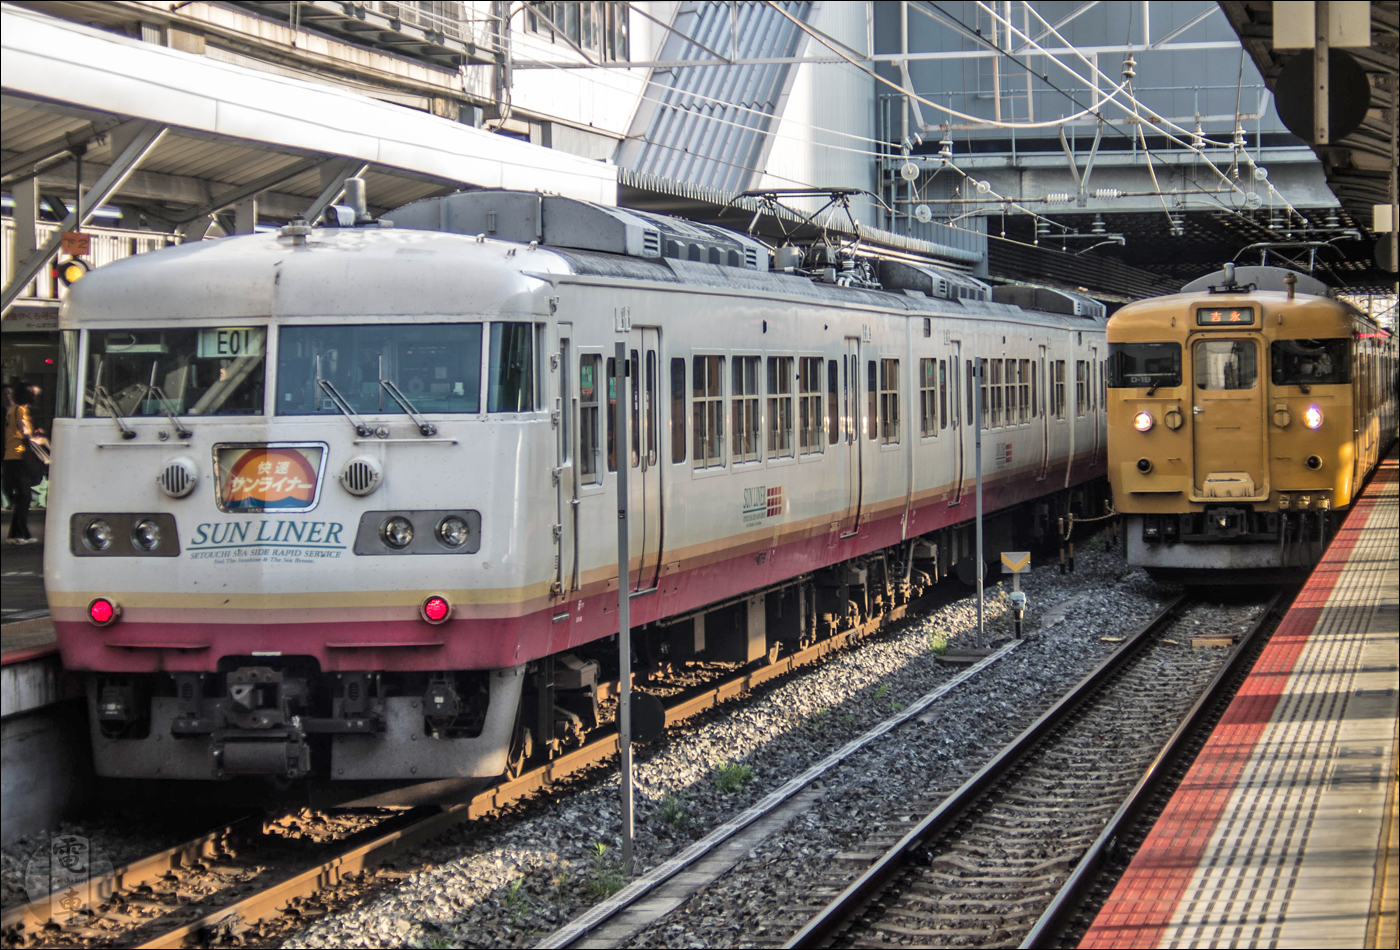 JR West 117-es sorozatú „Sun Liner” és egy 115-ös sorozatú személyvonat Okayama állomásán. A képen is látható, 4 kocsiból álló, E01 jelű motorvonatot 2015. szeptember 14-én, négy hónappal a kép készülte után törölték az állagból.